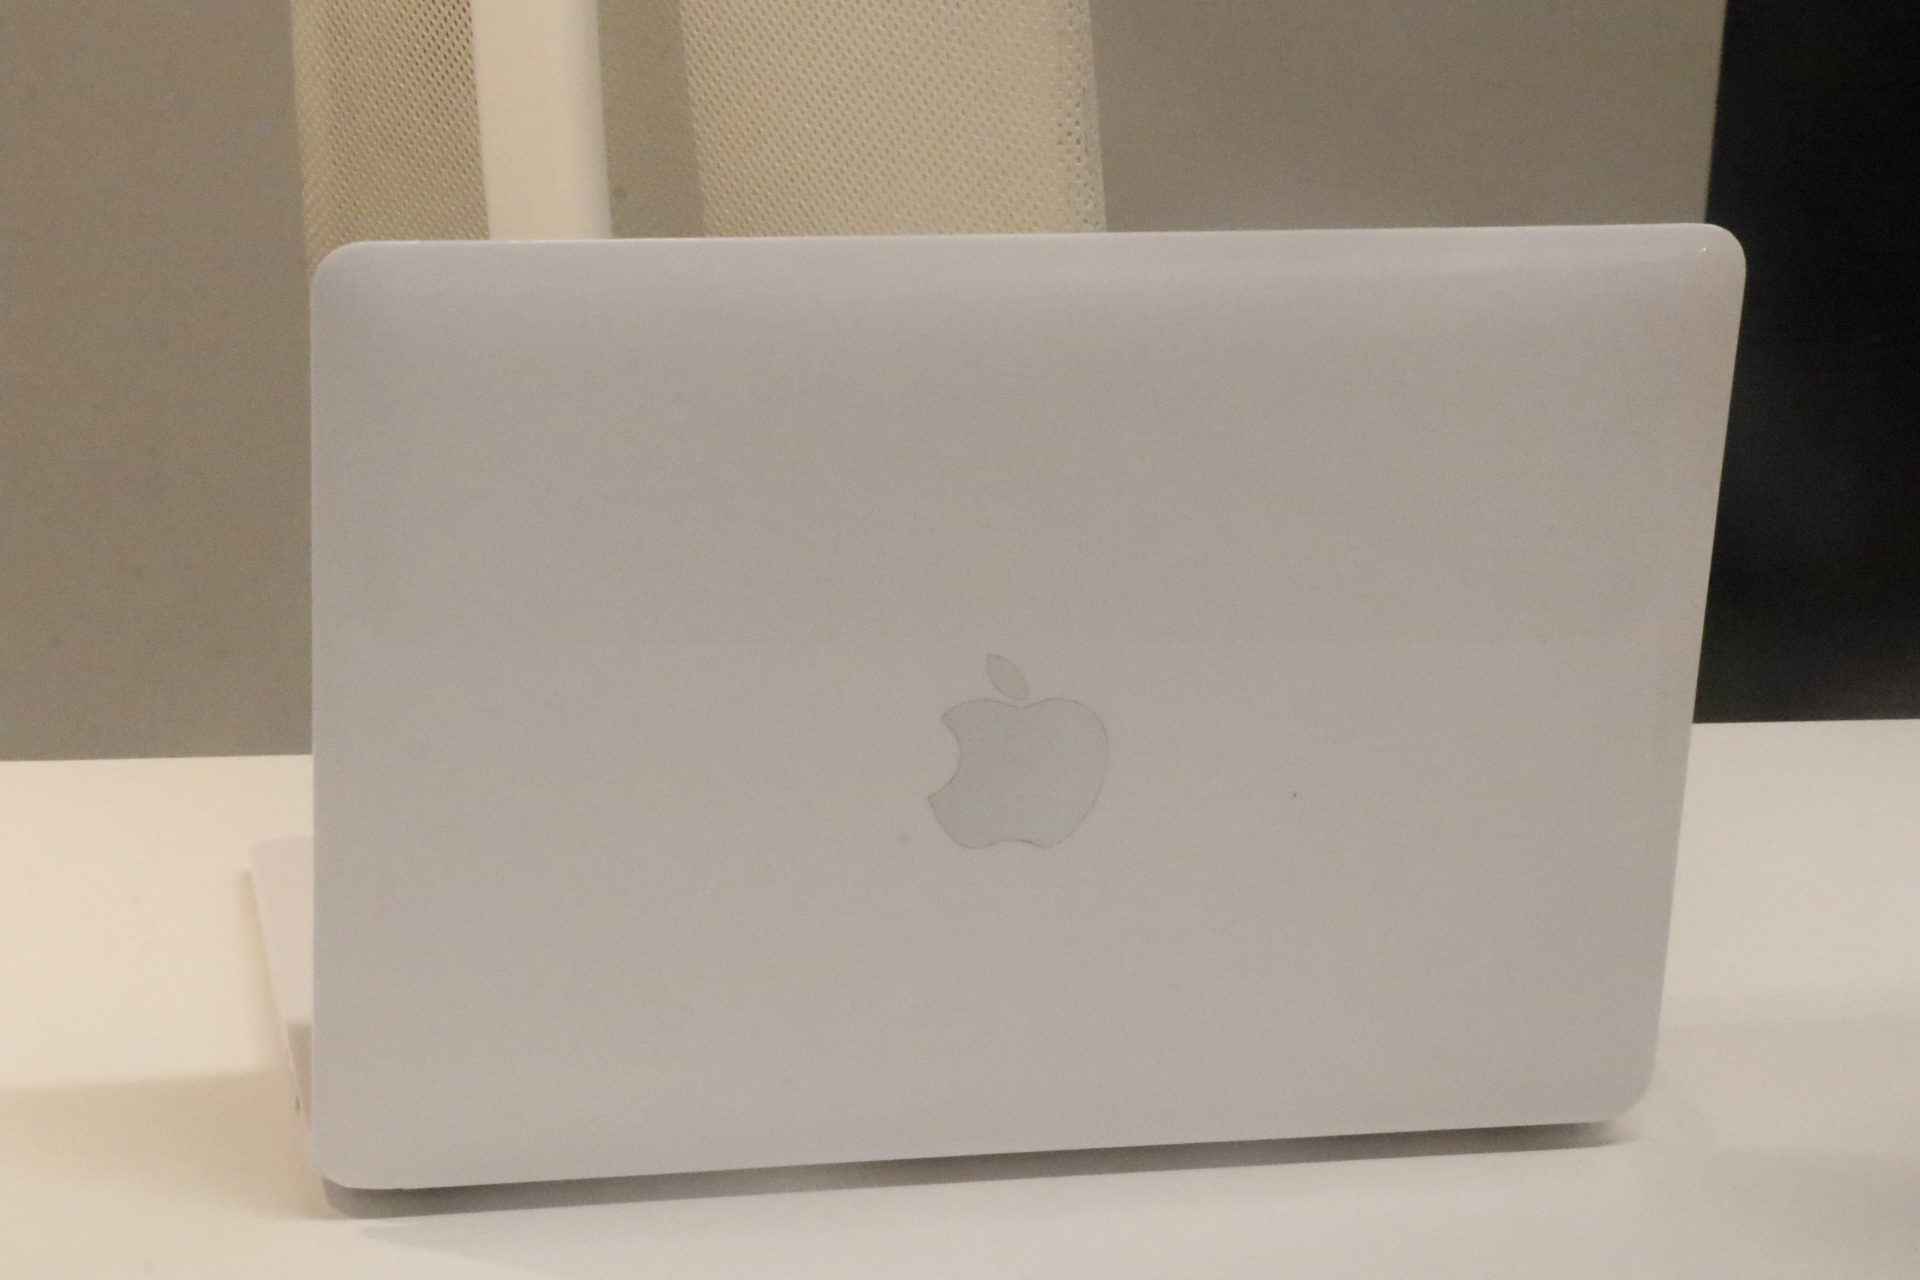 新MacBook Pro抢先开箱 苹果对刘海屏一事进行回应